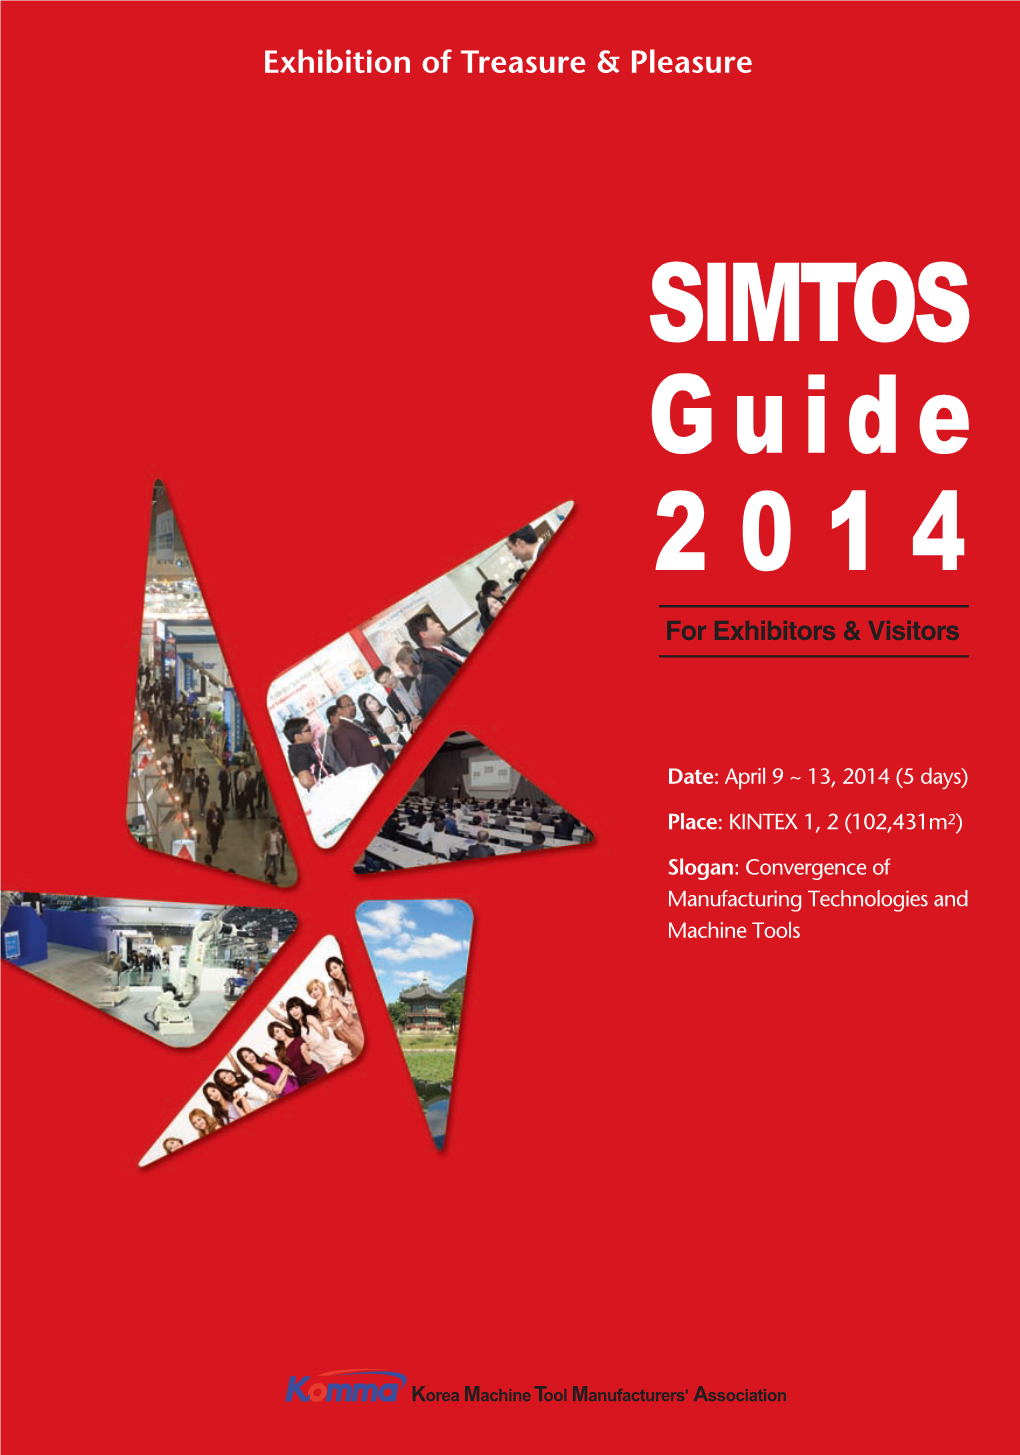 SIMTOS Guide 2 0